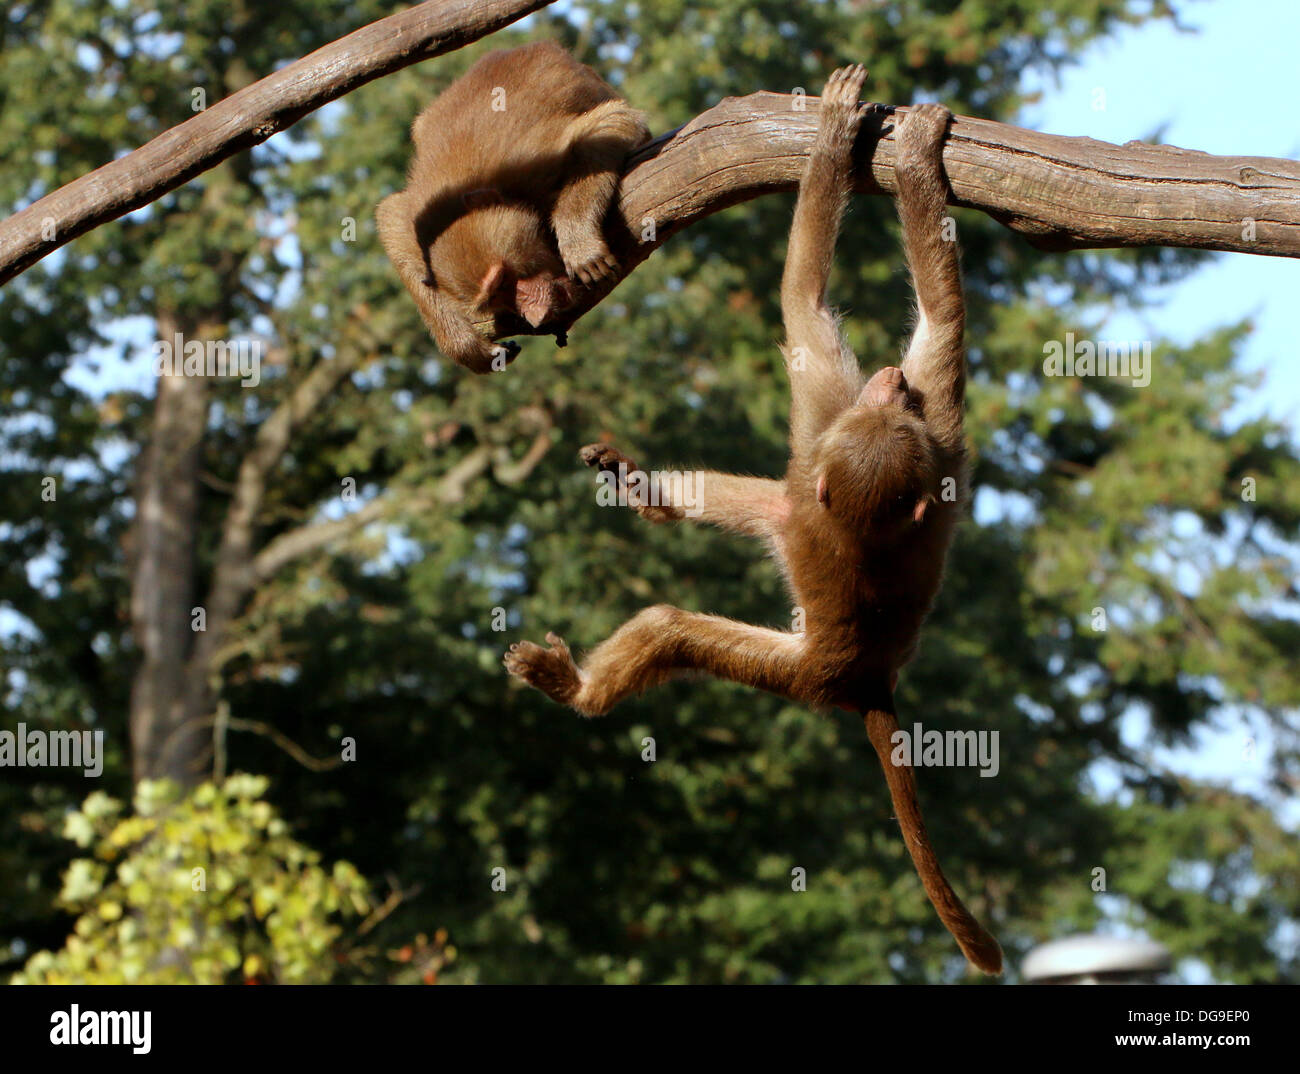 Les jeunes babouins (Papio hamadryas hamadryas, a.k.a babouin sacré) se balancer sur une branche et chassant les uns les autres Banque D'Images